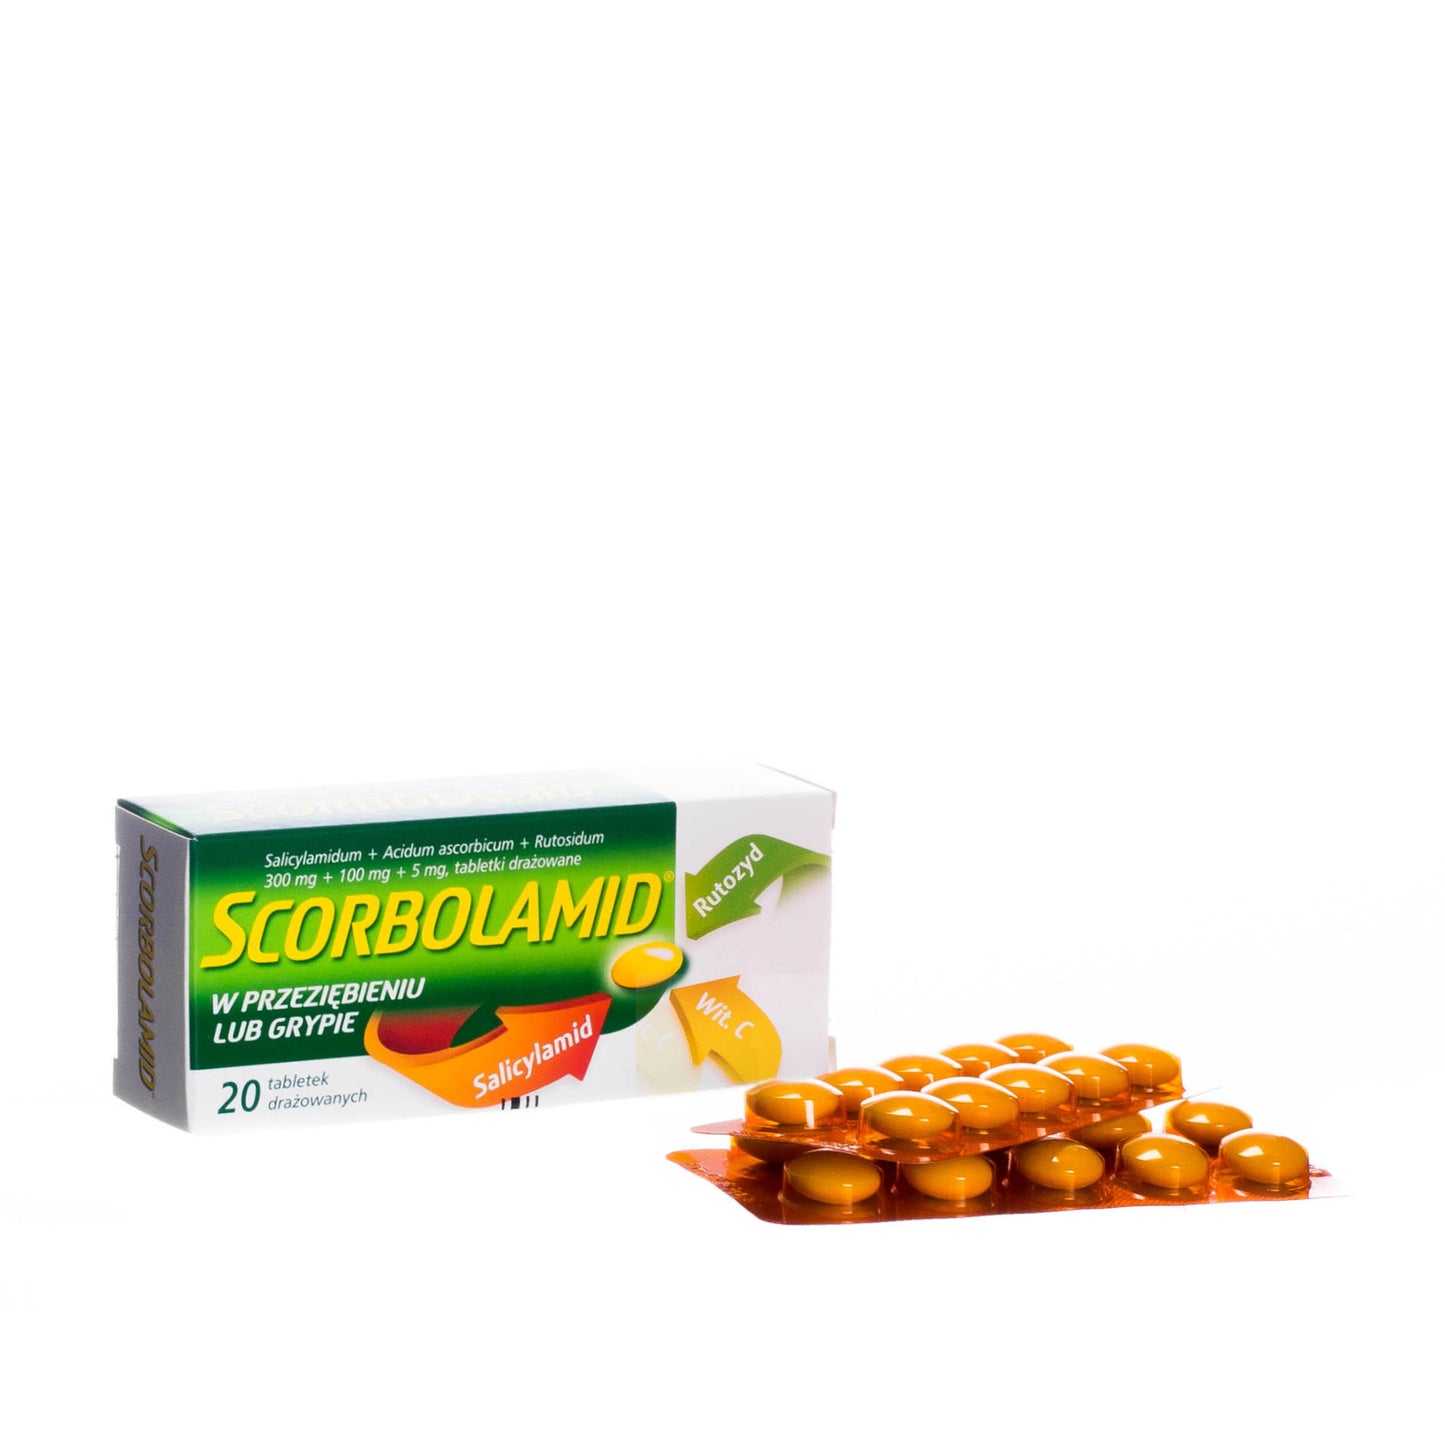 scorbolamid tablets